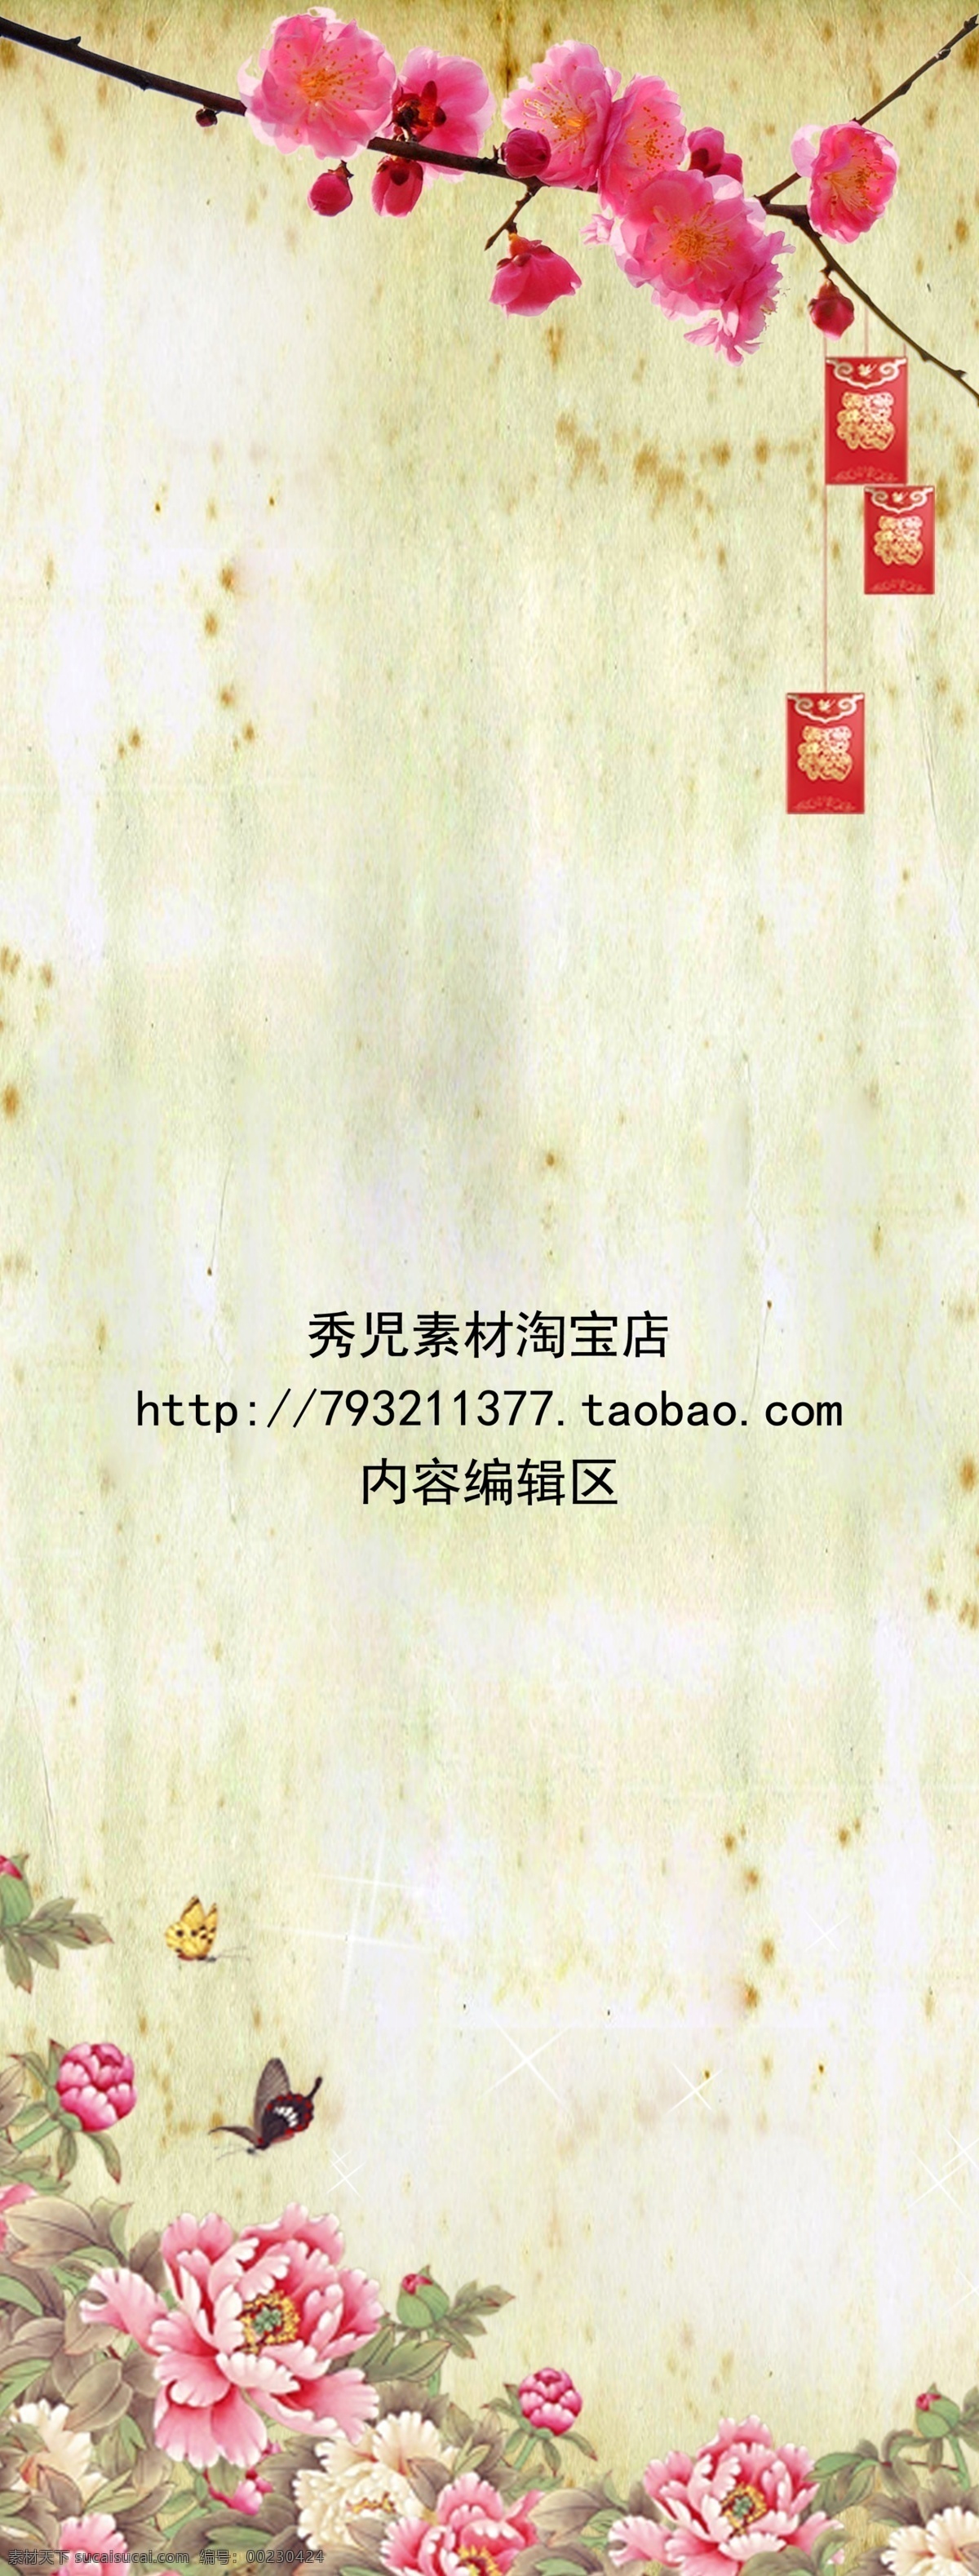 中国 风 水墨 牡丹 展架 模板 海报 画面 中国风 水墨画 牡丹素材 精美牡丹 精美边框素材 x展架 展架素材 精美展架 展架模板 展架设计素材 白色